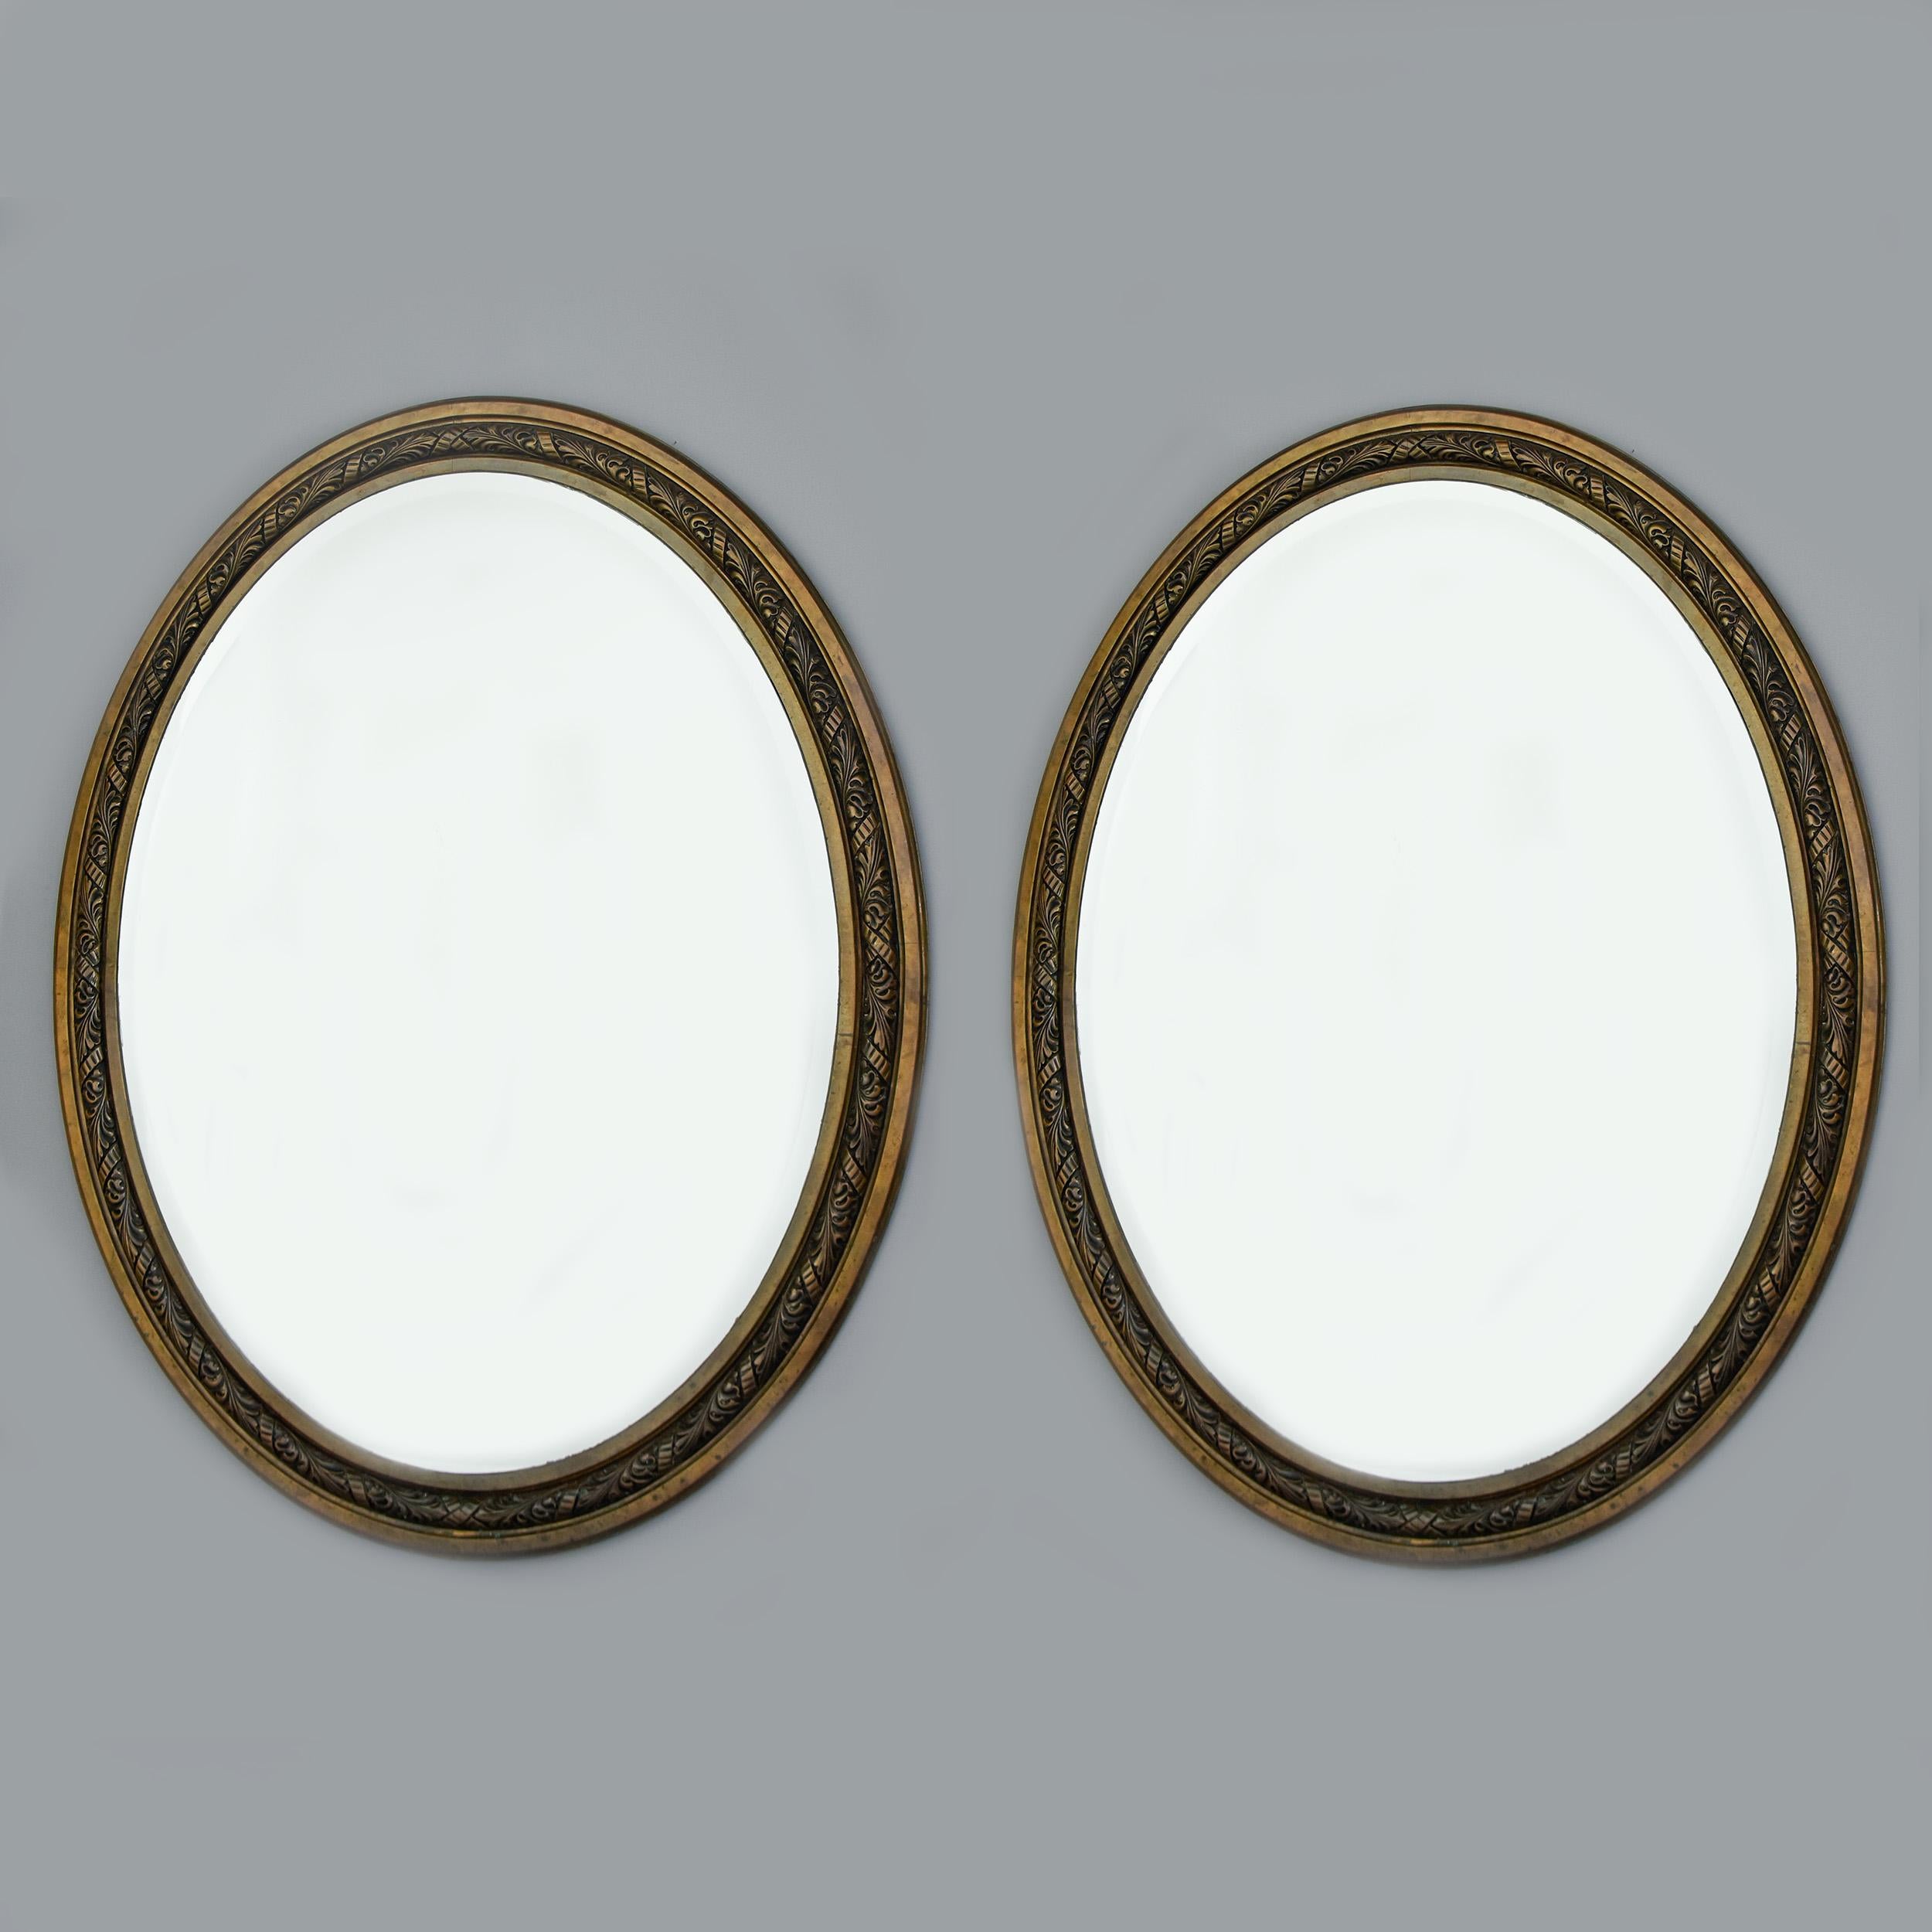 Großes Paar ovaler französischer Jugendstil-Spiegel in Bronzerahmen aus der Zeit um 1910. Die Rahmen sind 57